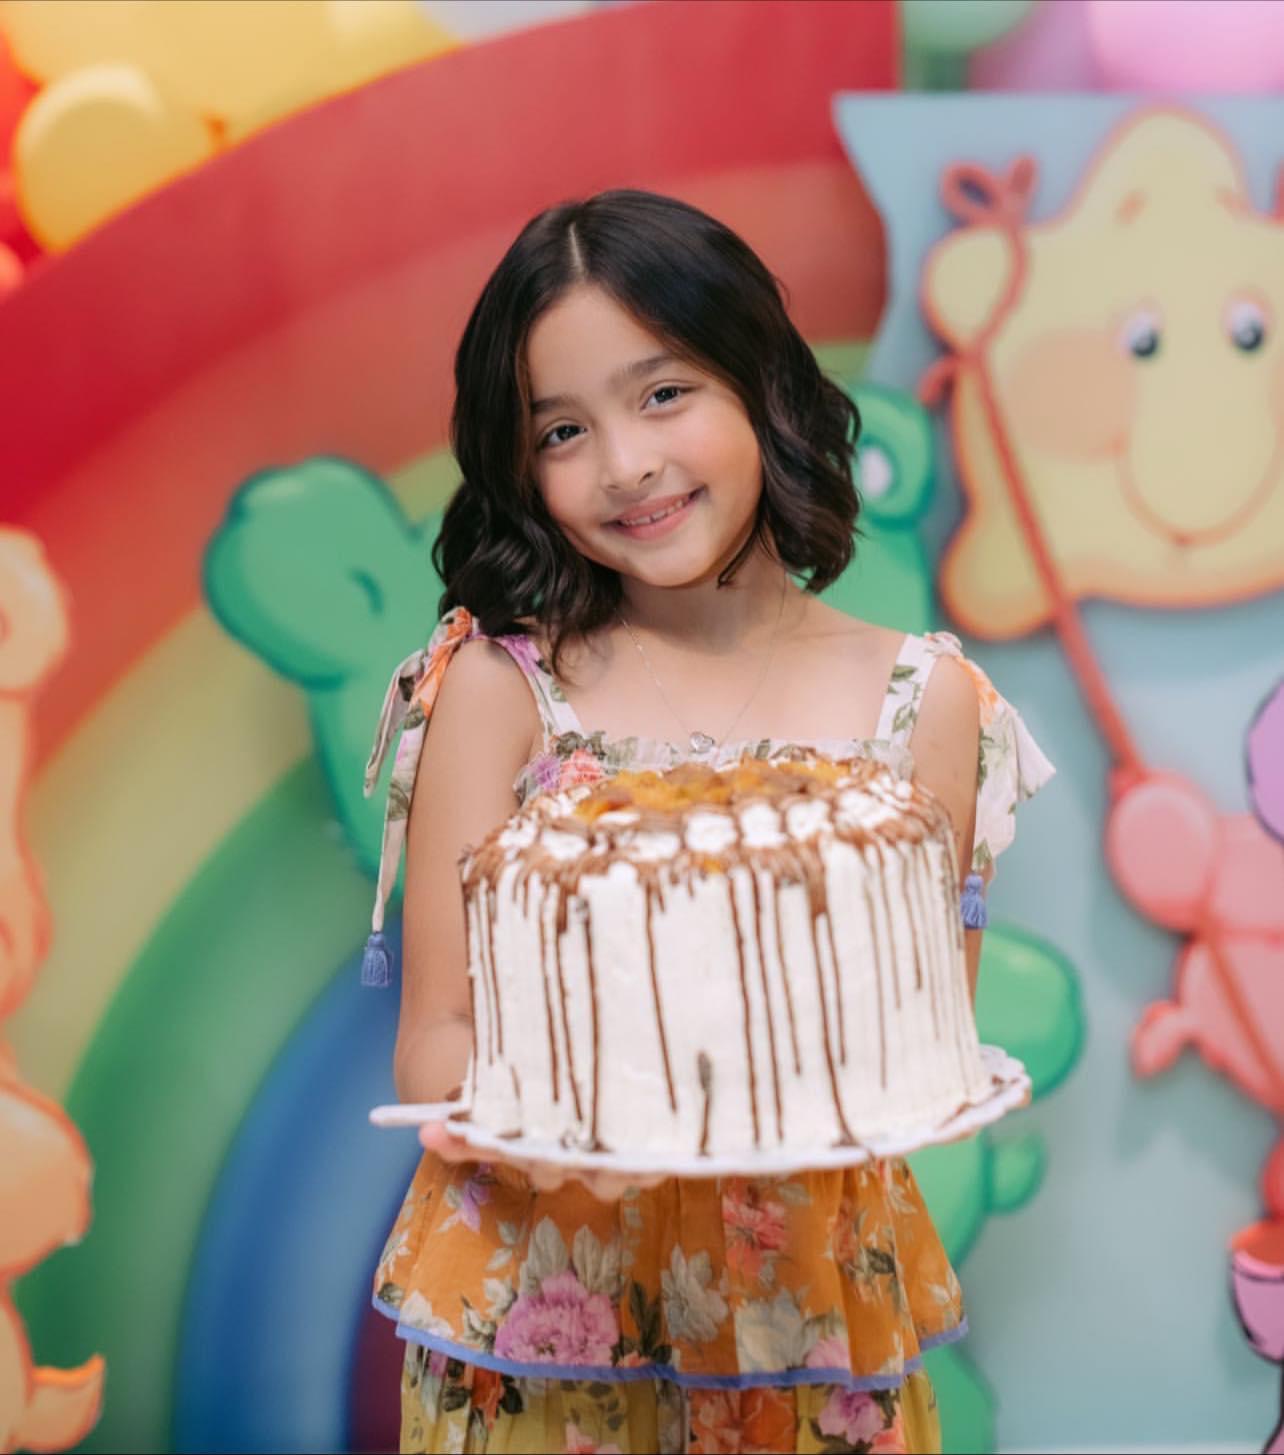 Con gái mỹ nhân đẹp nhất Philippines gây bão với nhan sắc xuất chúng trong tiệc sinh nhật 7 tuổi - Ảnh 4.